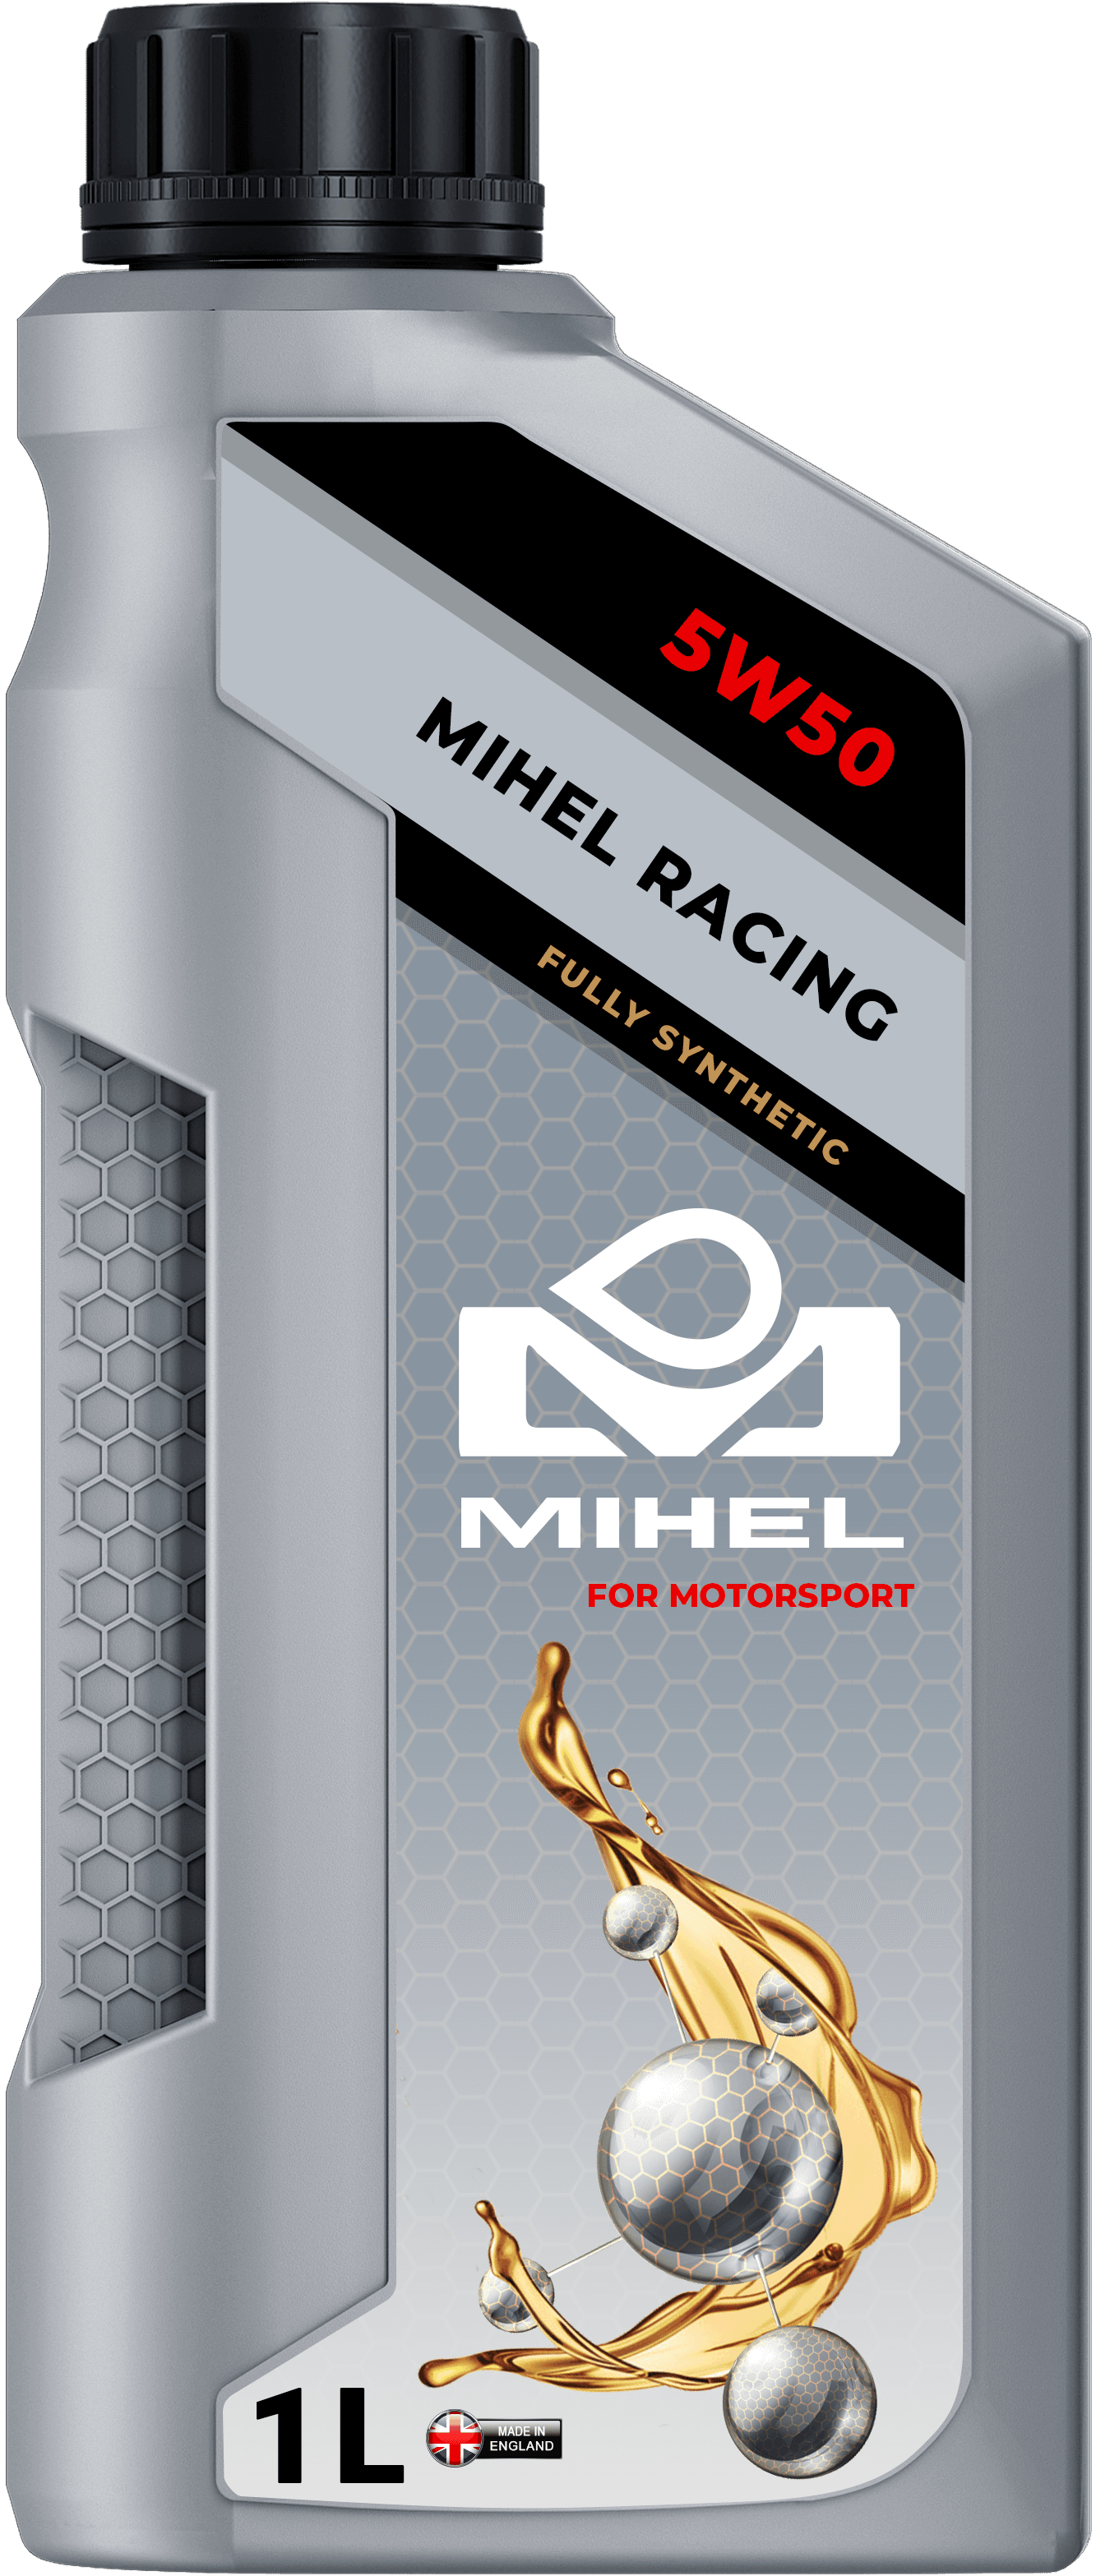 MIHEL Ceramic Oil® Racing 5W50